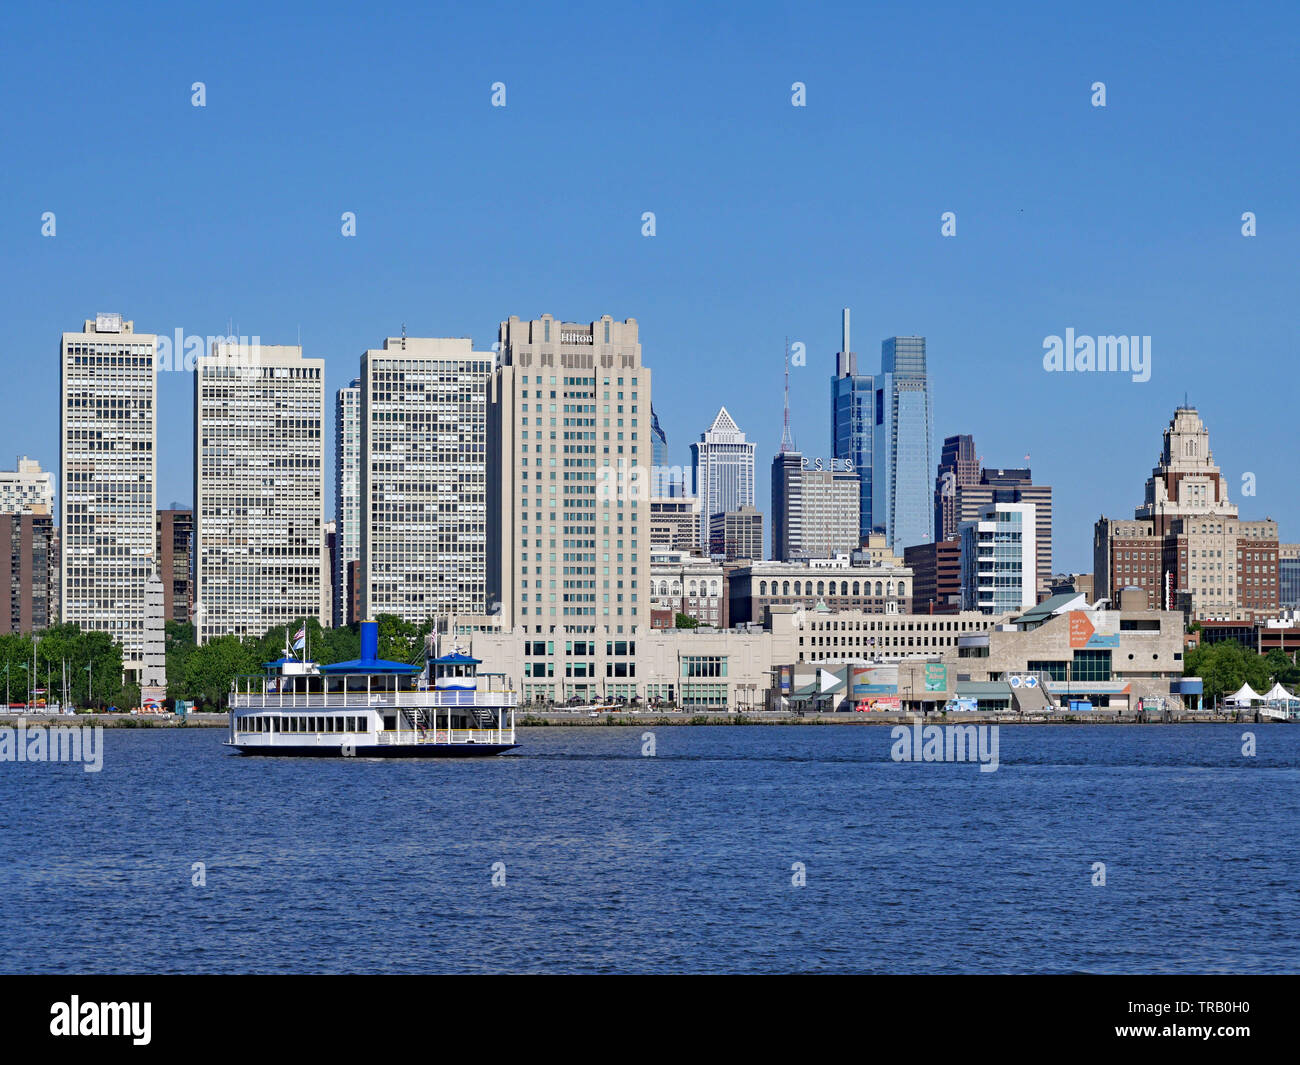 PHILADELPHIA - Mai 2019: A Waterfront Park in Camden, New Jersey, bietet einen schönen Blick auf die Skyline von Philadelphia über den Delaware Rive, die b Stockfoto